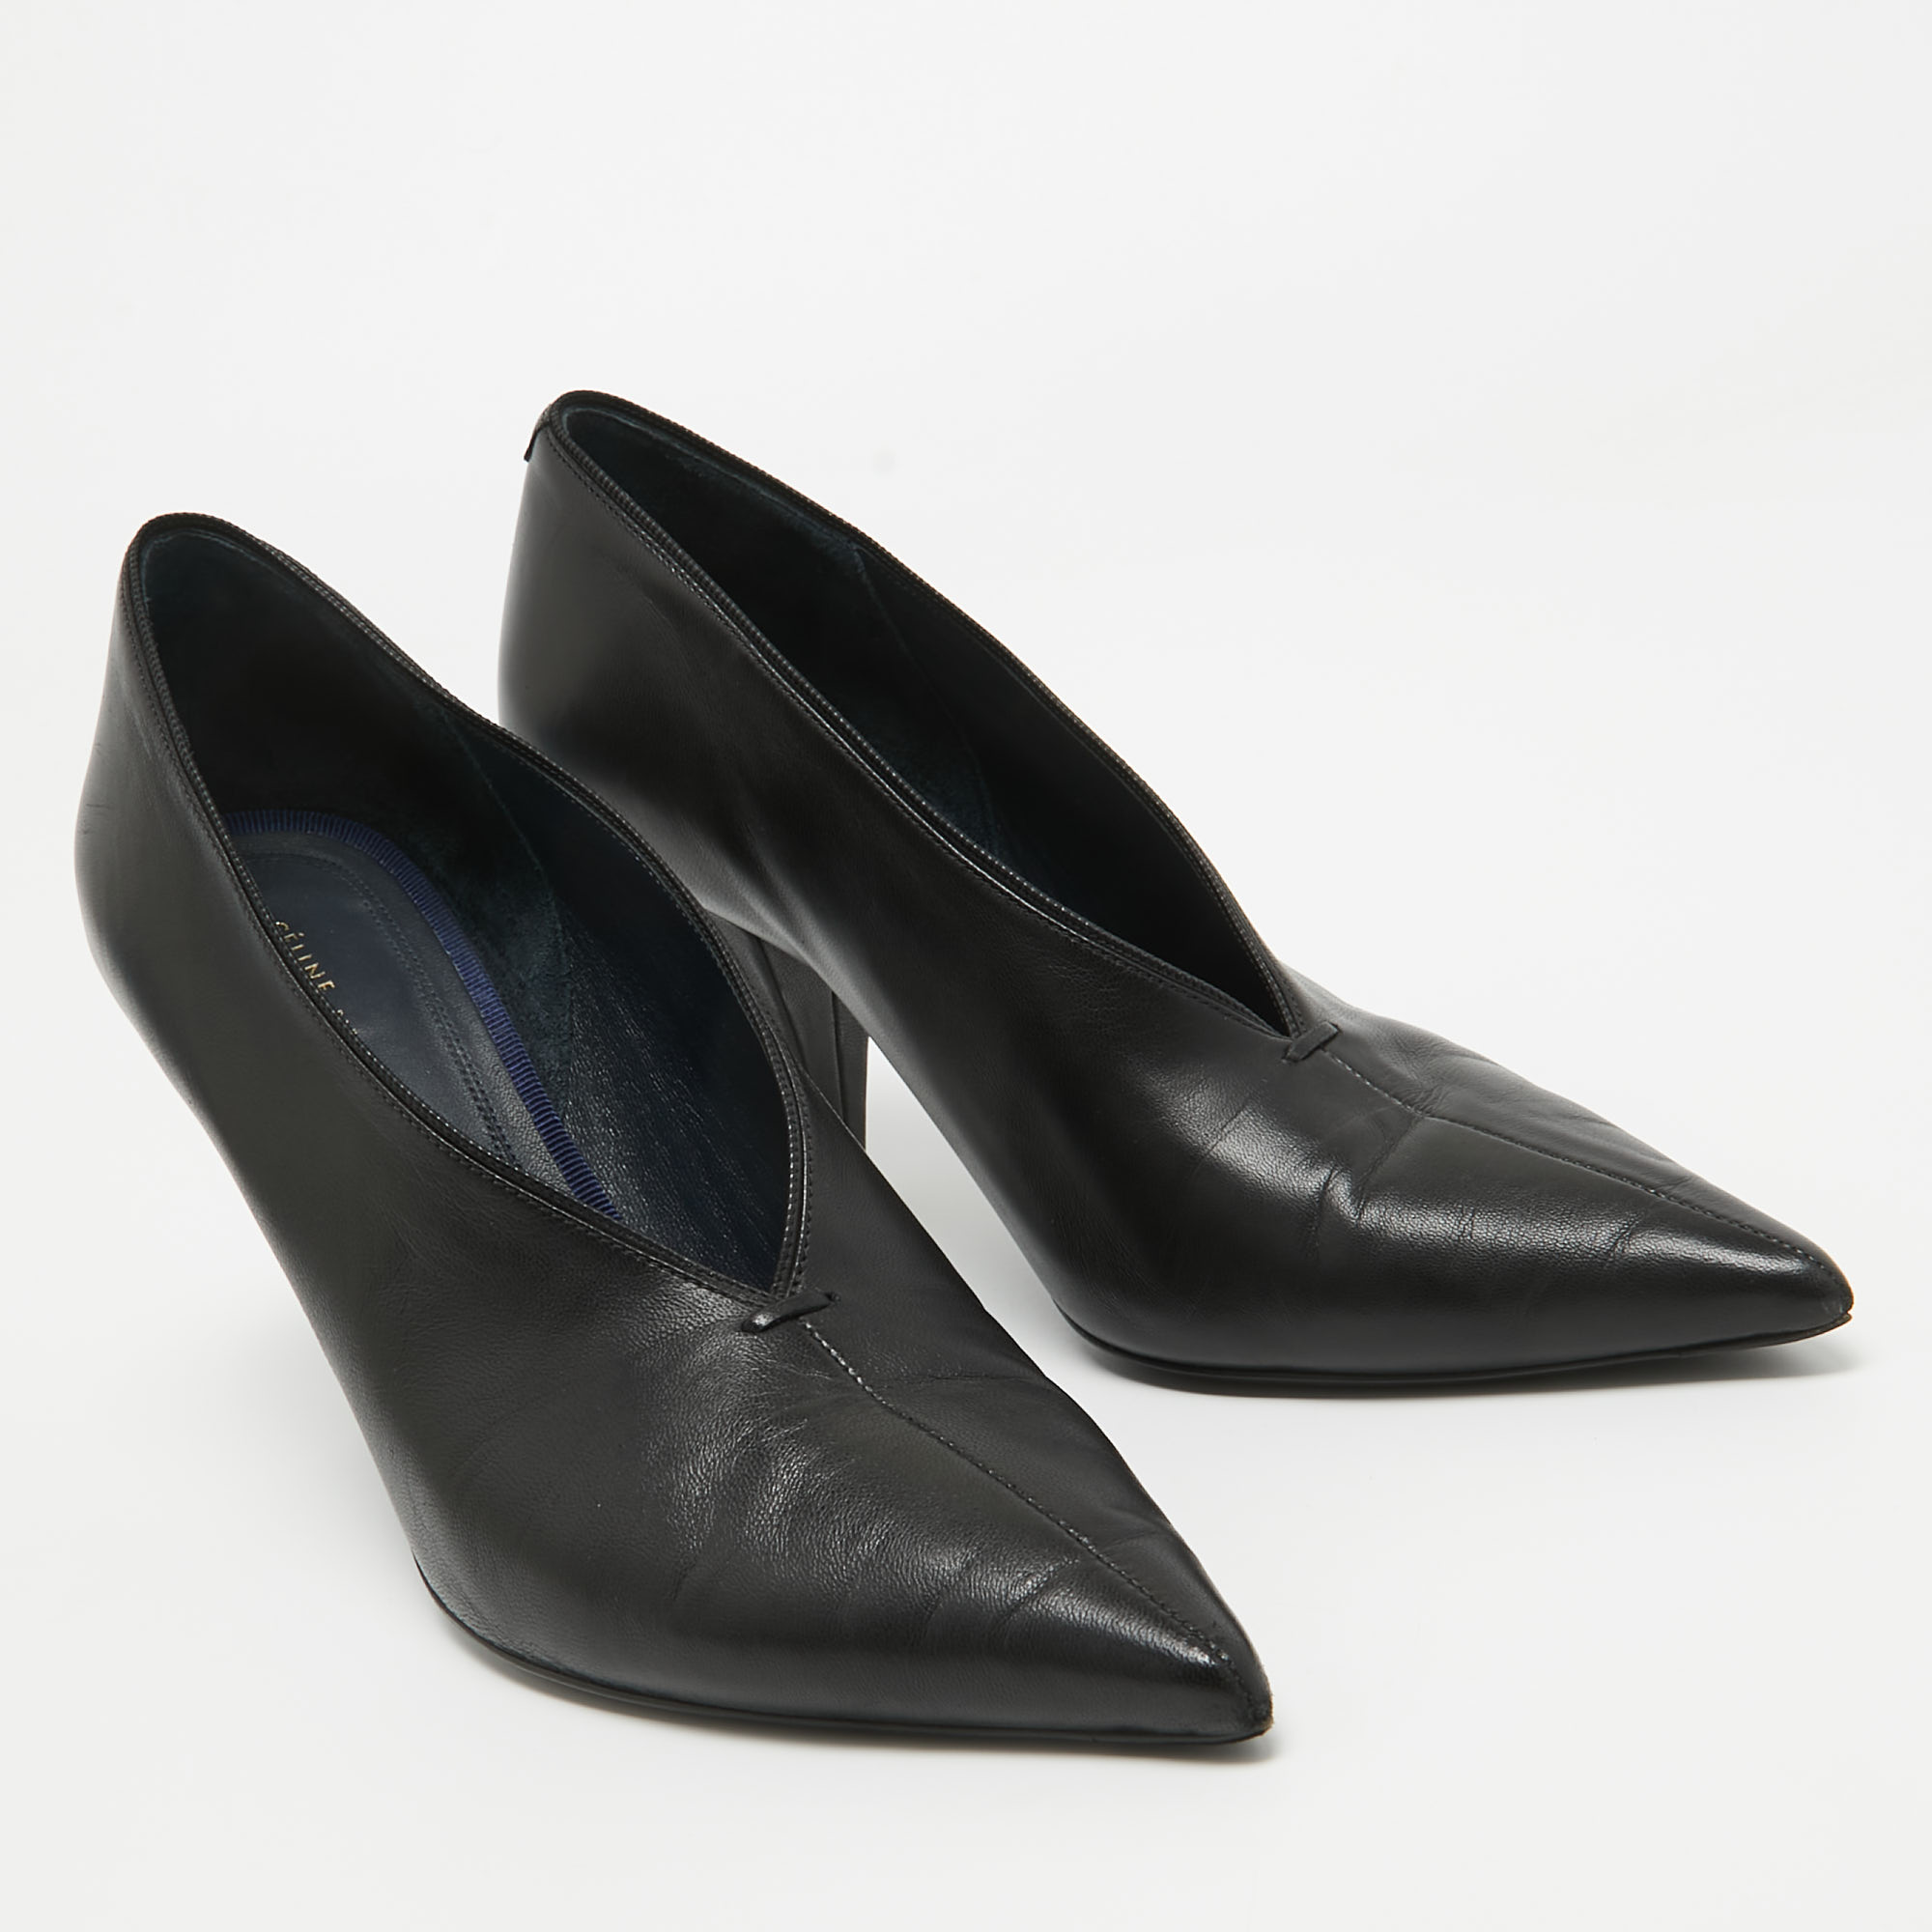 Celine Black Leather V Neck Pointed Toe Pumps Size 37